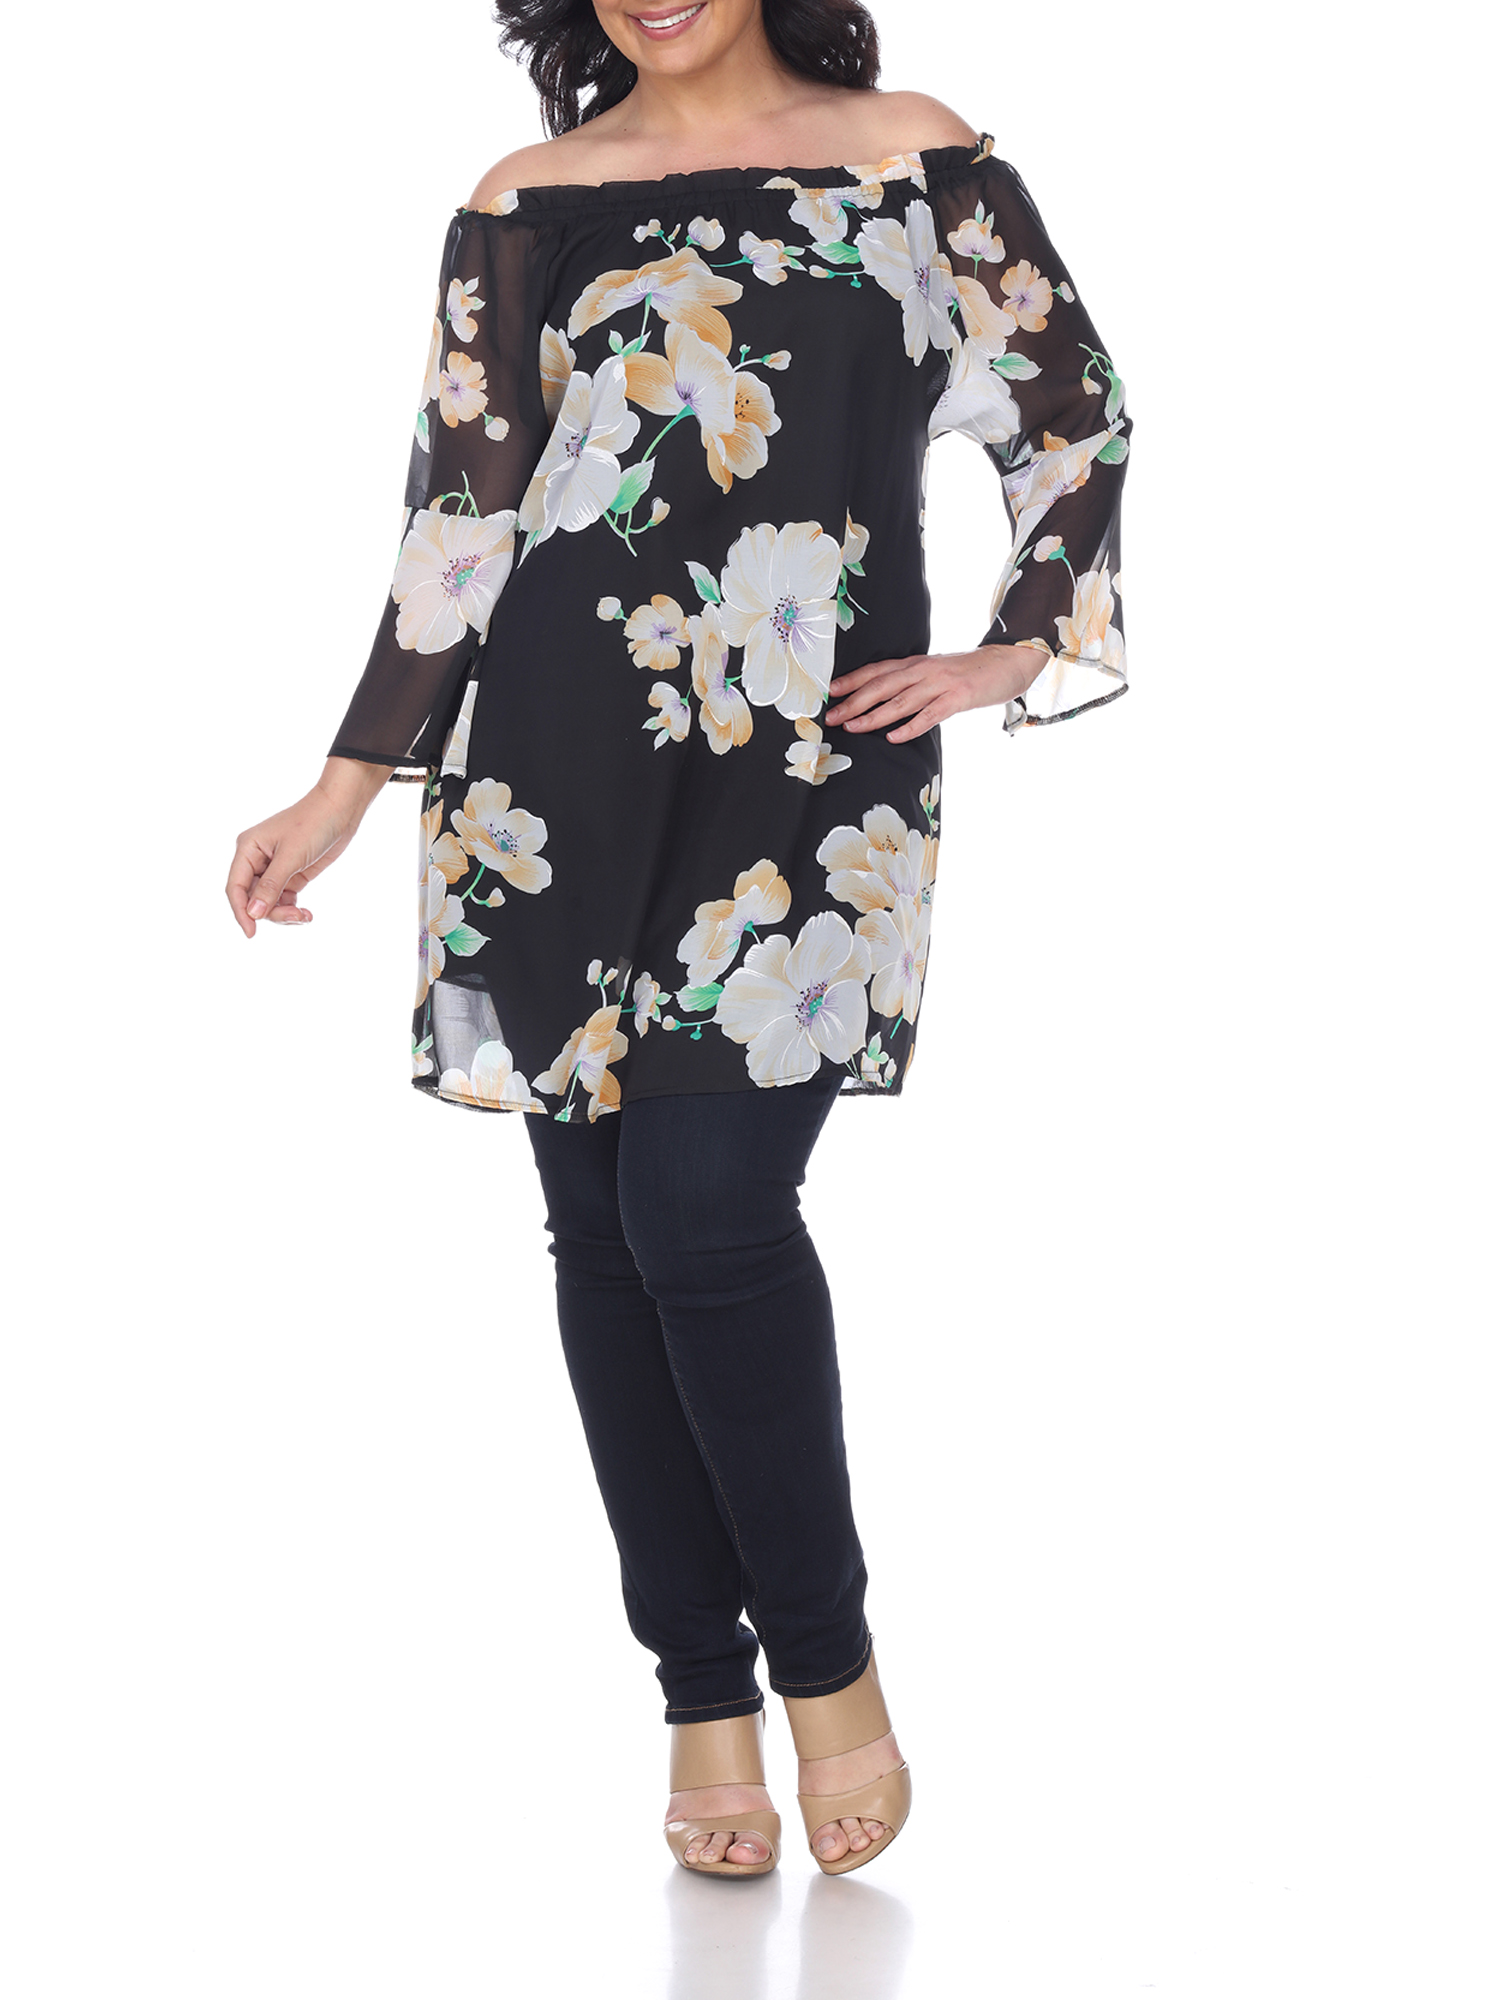 Women's Plus Size Floral Print Off Shoulder Tunic Top - Walmart.com